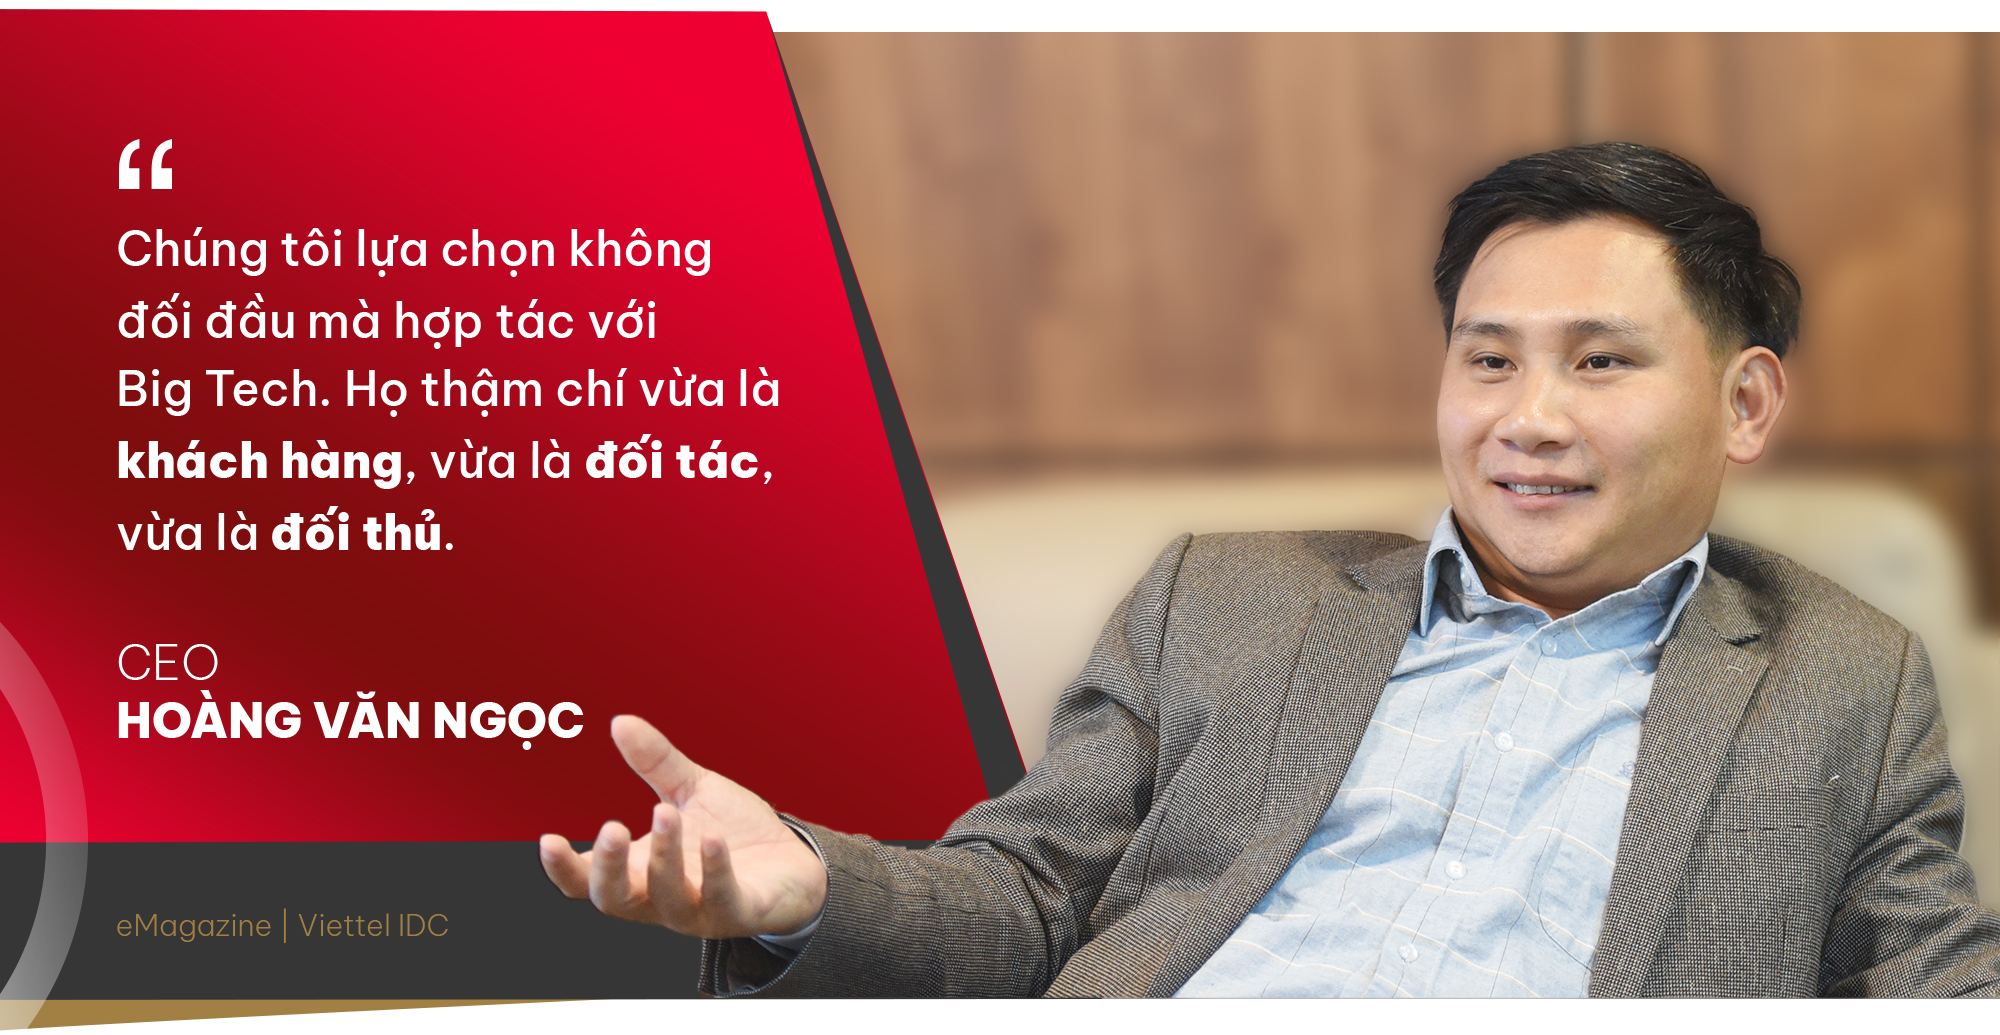 CEO Hoàng Văn Ngọc: Viettel IDC luôn nỗ lực trở thành phiên bản tốt nhất của chính mình - Ảnh 5.